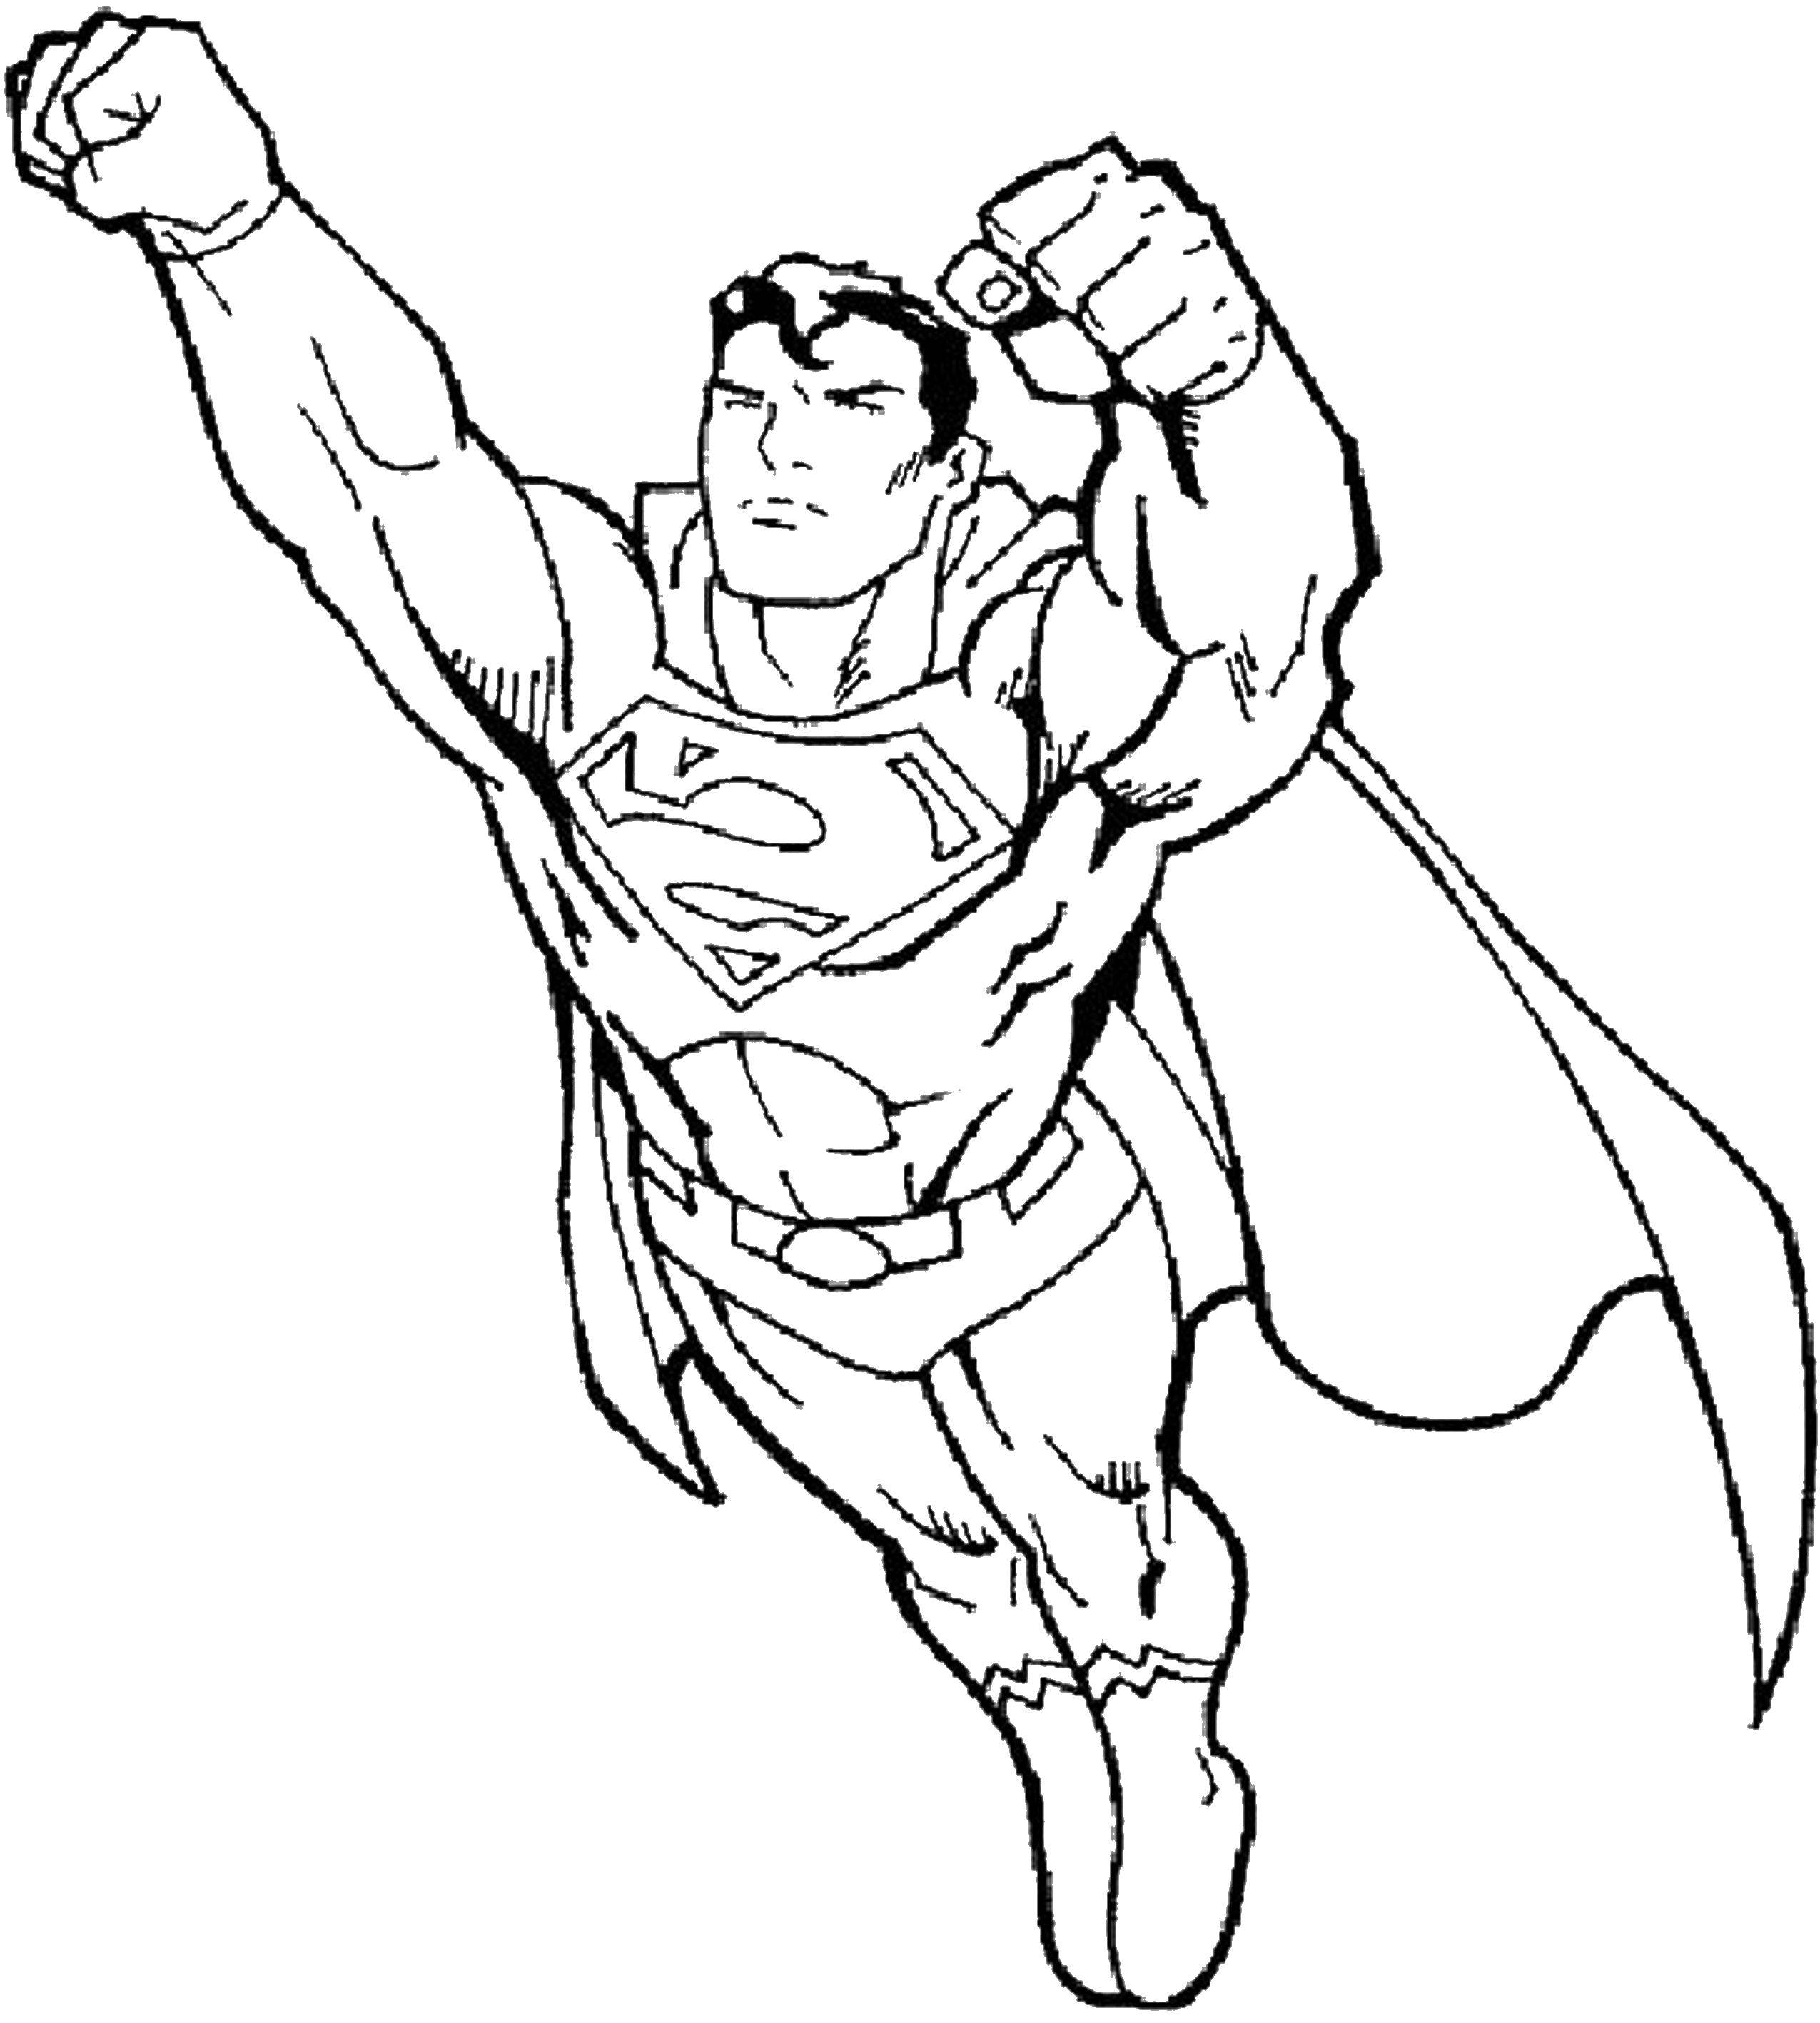 Опис: розмальовки  Супер людина. Категорія: Для хлопчиків. Теги:  супергерої, супермен, супер людина.